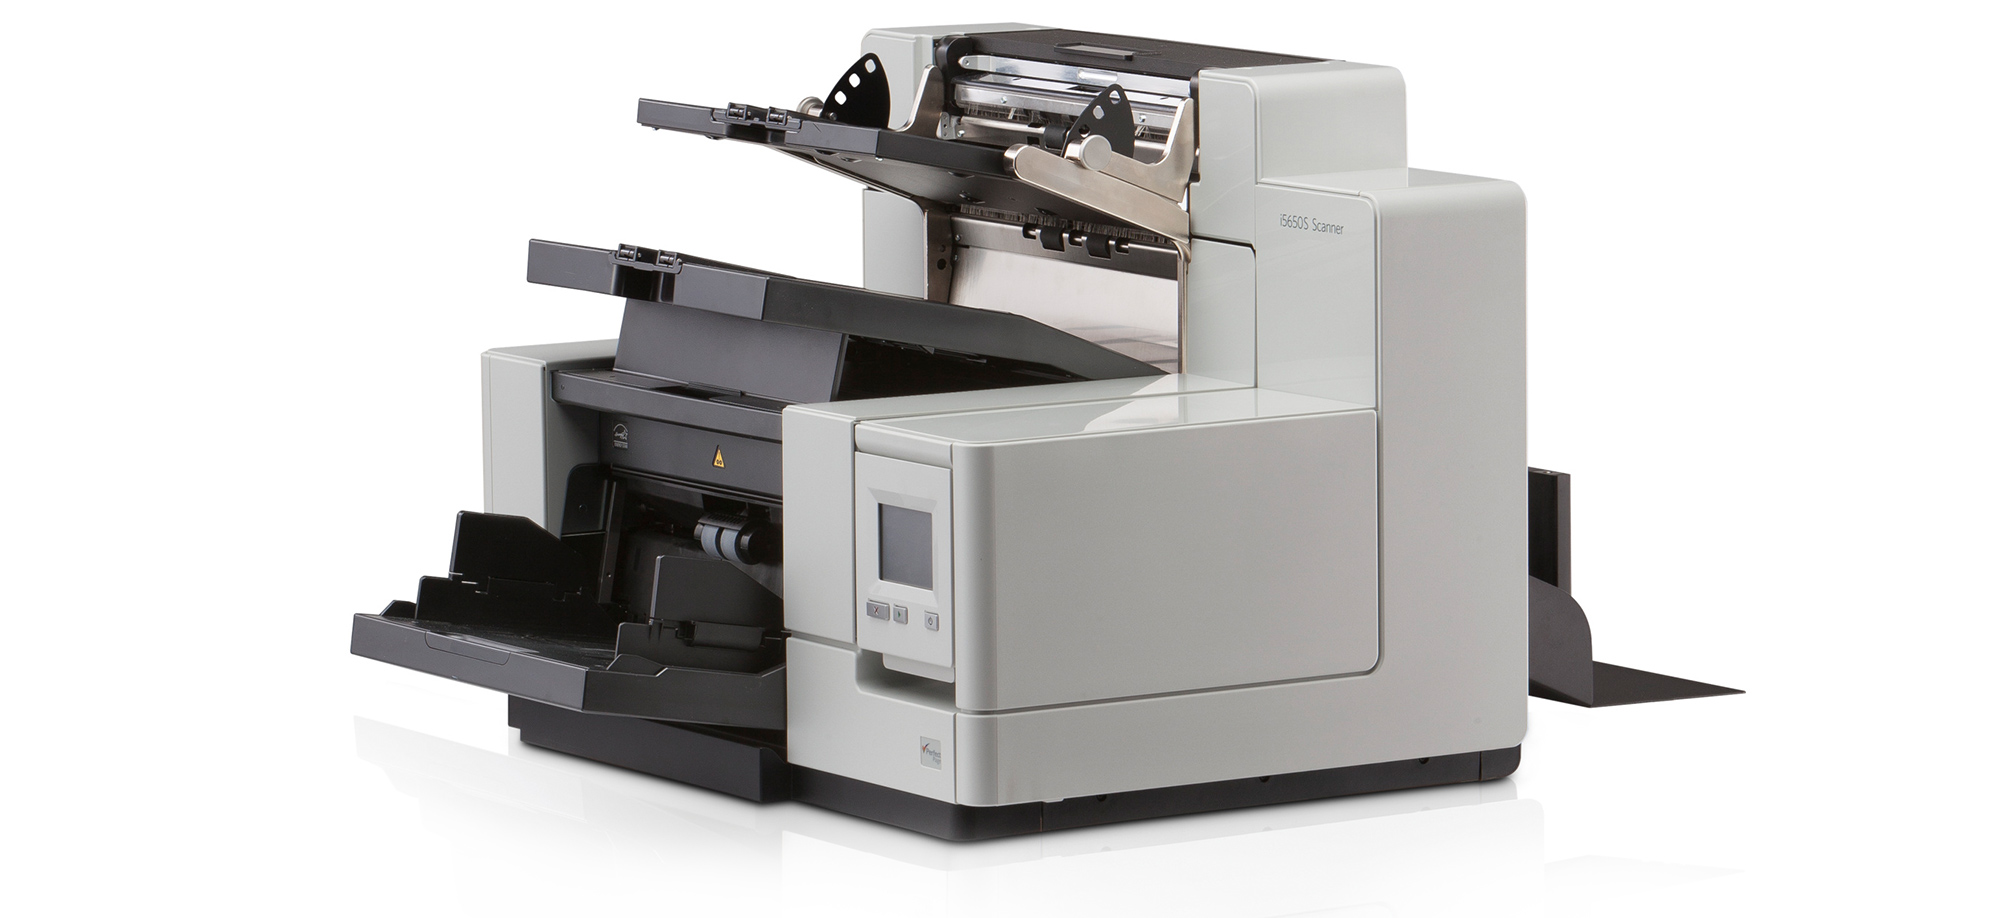 Scanner Kodak Serie i5000